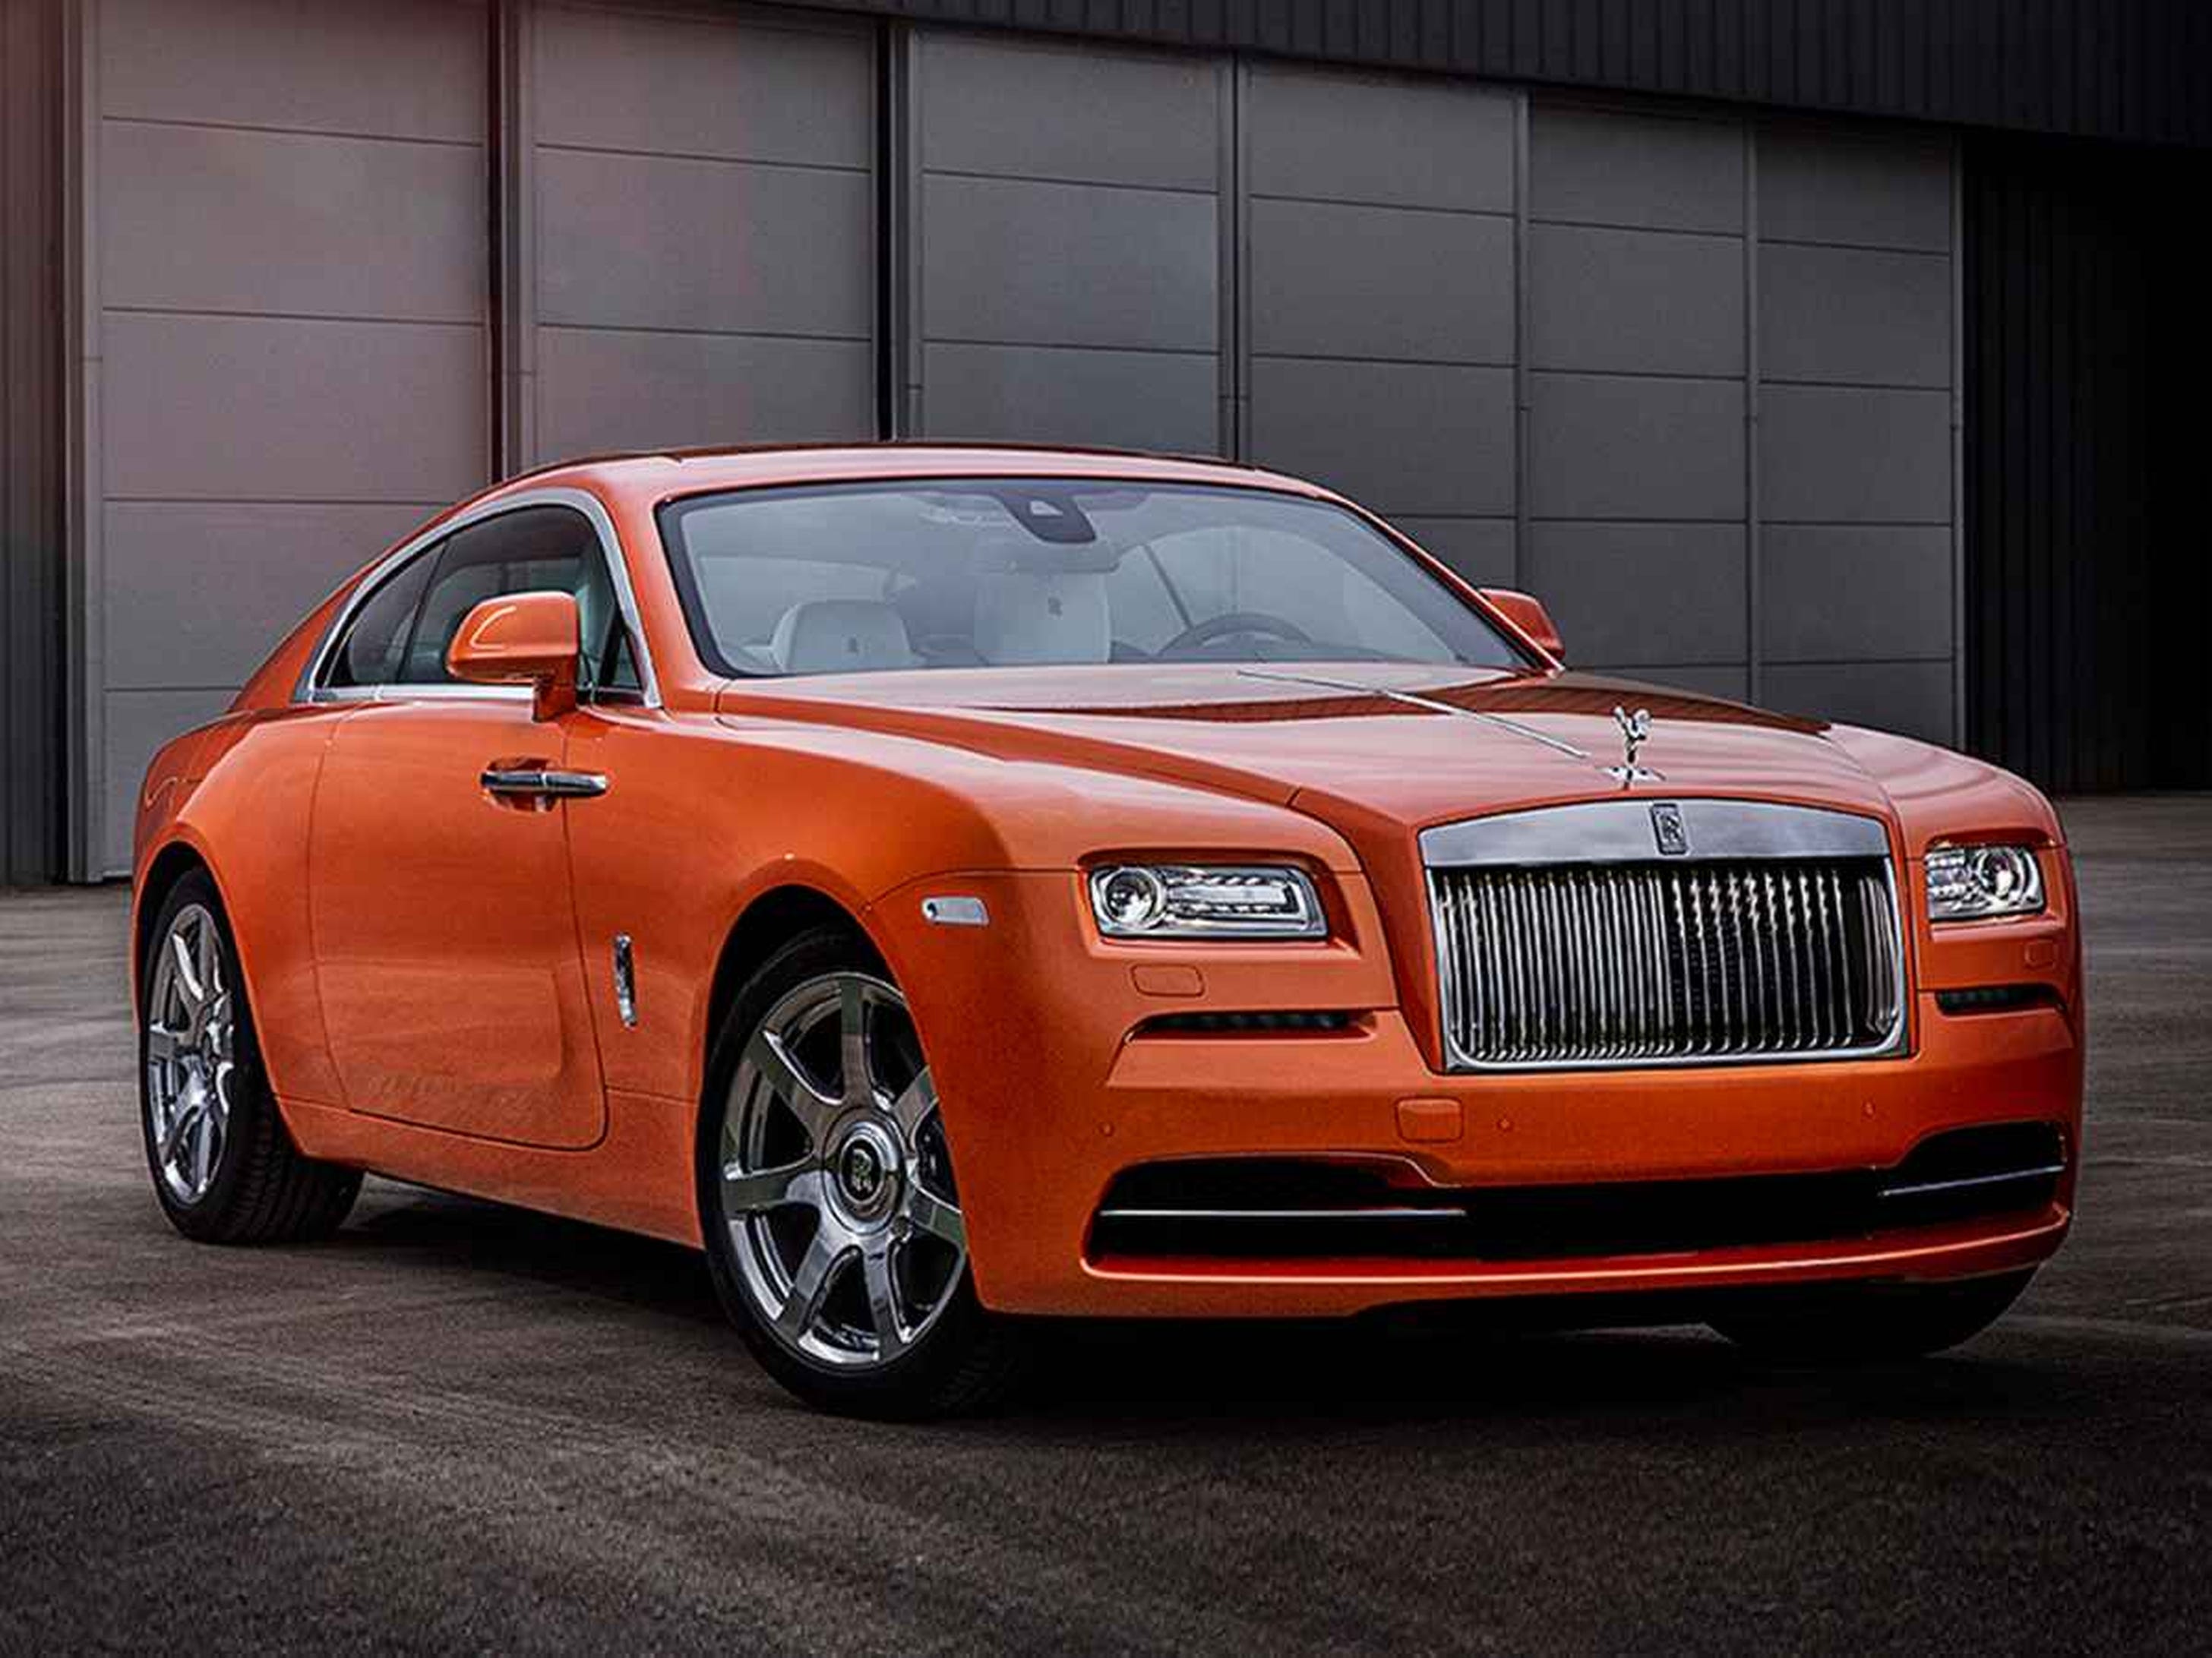 Роллс врайт. Rolls Royce Wraith Orange. Rolls Royce Wraith Фантом. Rolls Royce Wraith расцветки. Ройс врайт оранжевый.